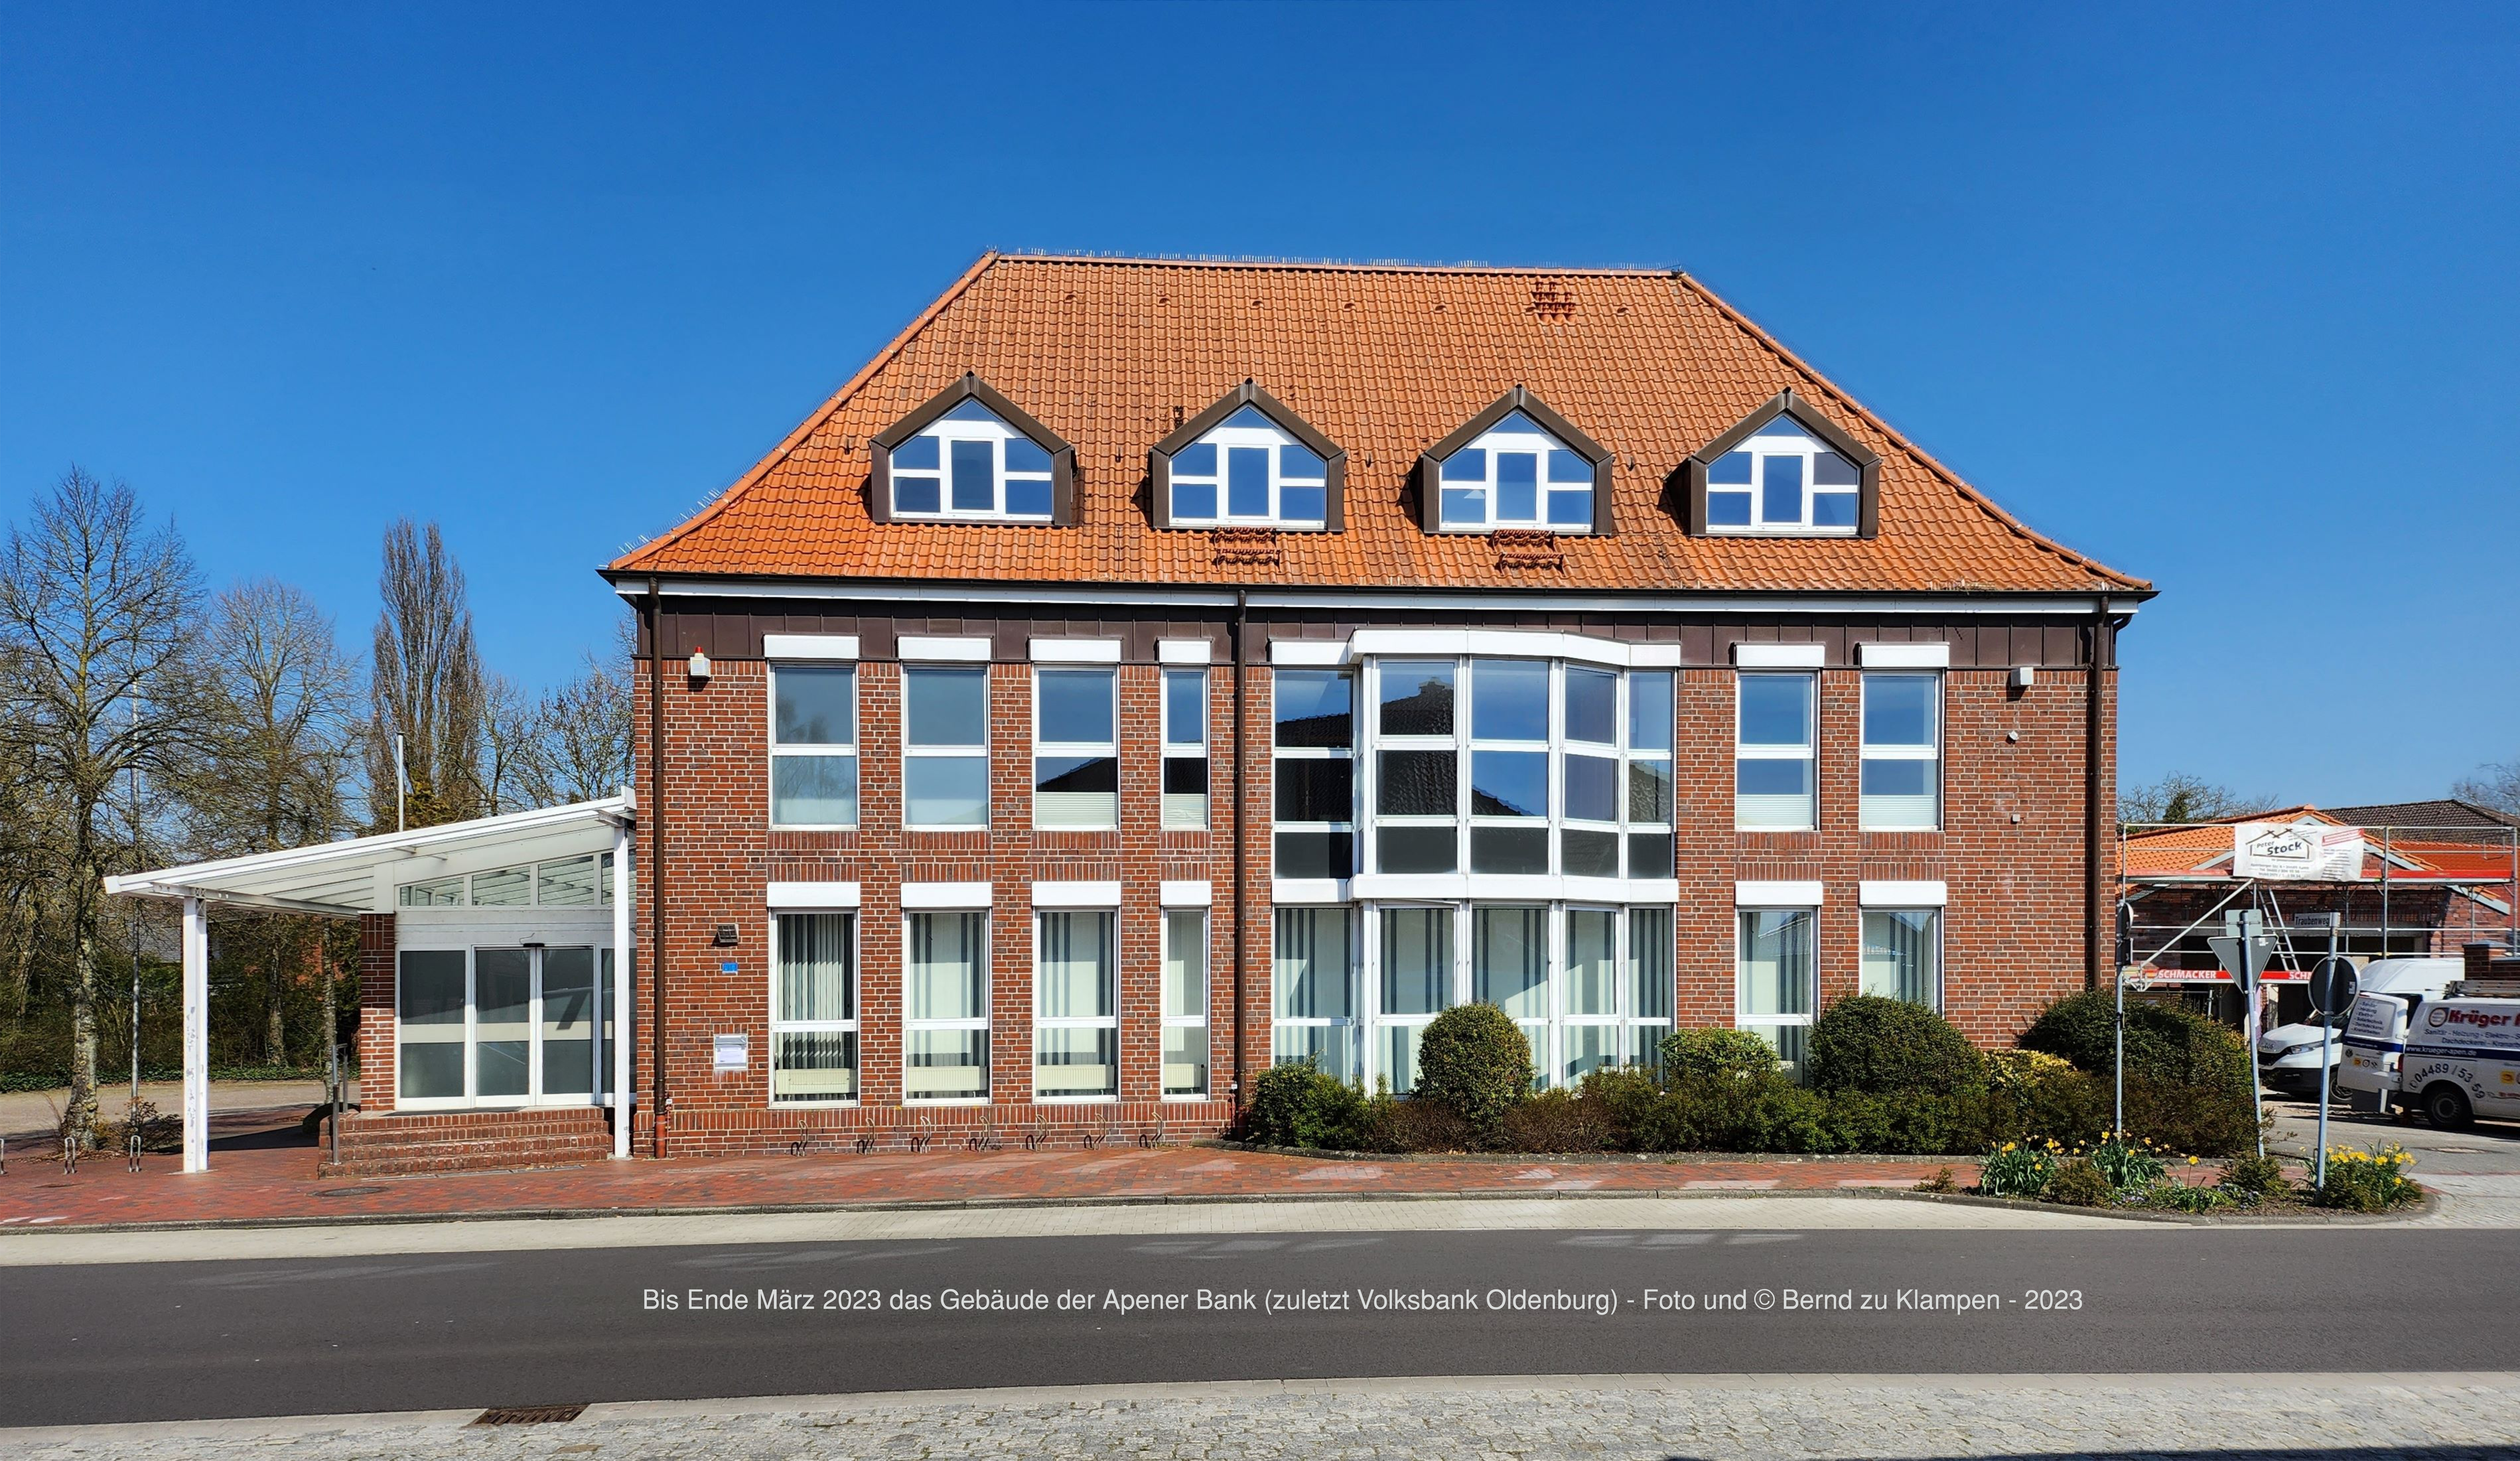 Neubaugebiet Apen Nord (ehem. Hof Schröder) am 05.04.2023 - Bei Quadratmeterpreisen von 150,-€ offenbar nur für die gehobene Mittelschicht zugänglich.